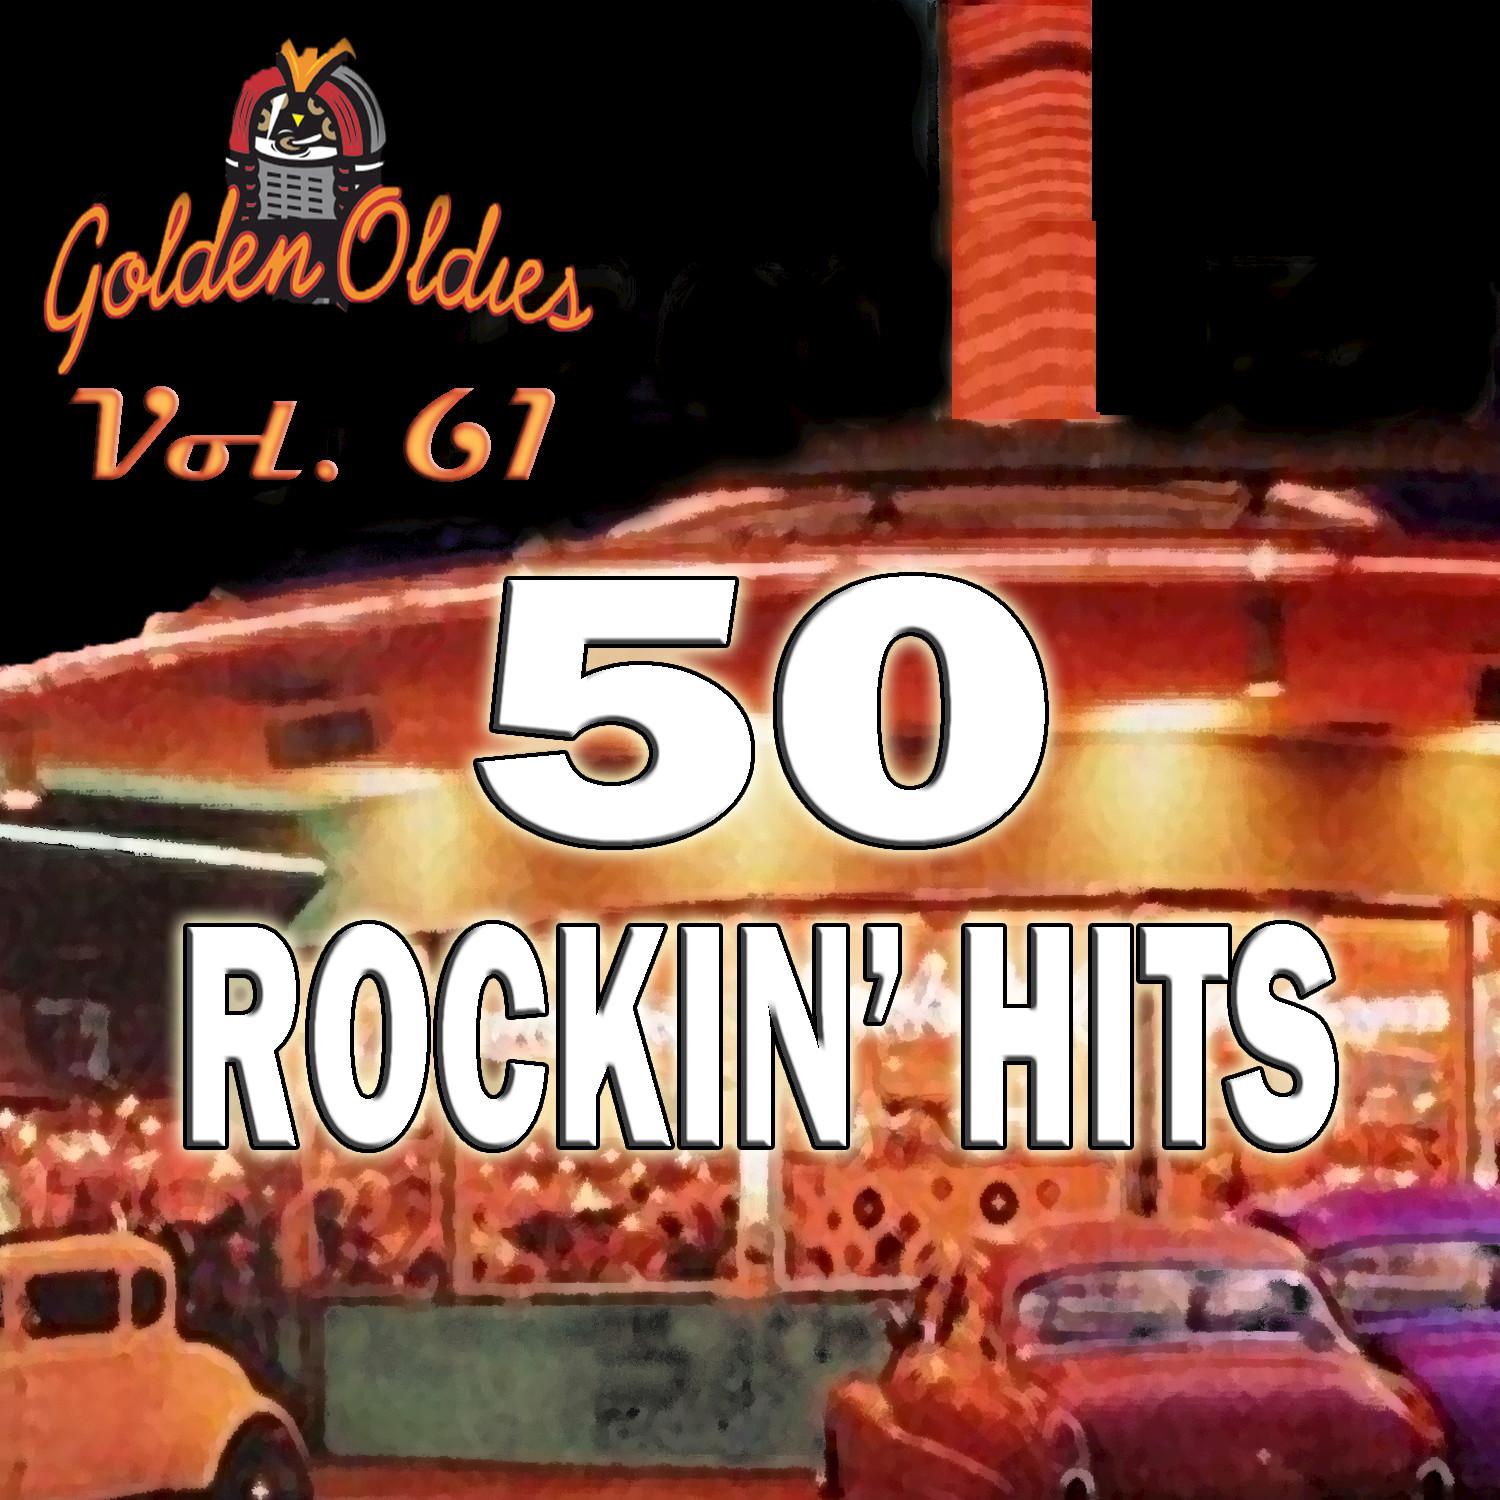 50 Rockin' Hits, Vol. 61